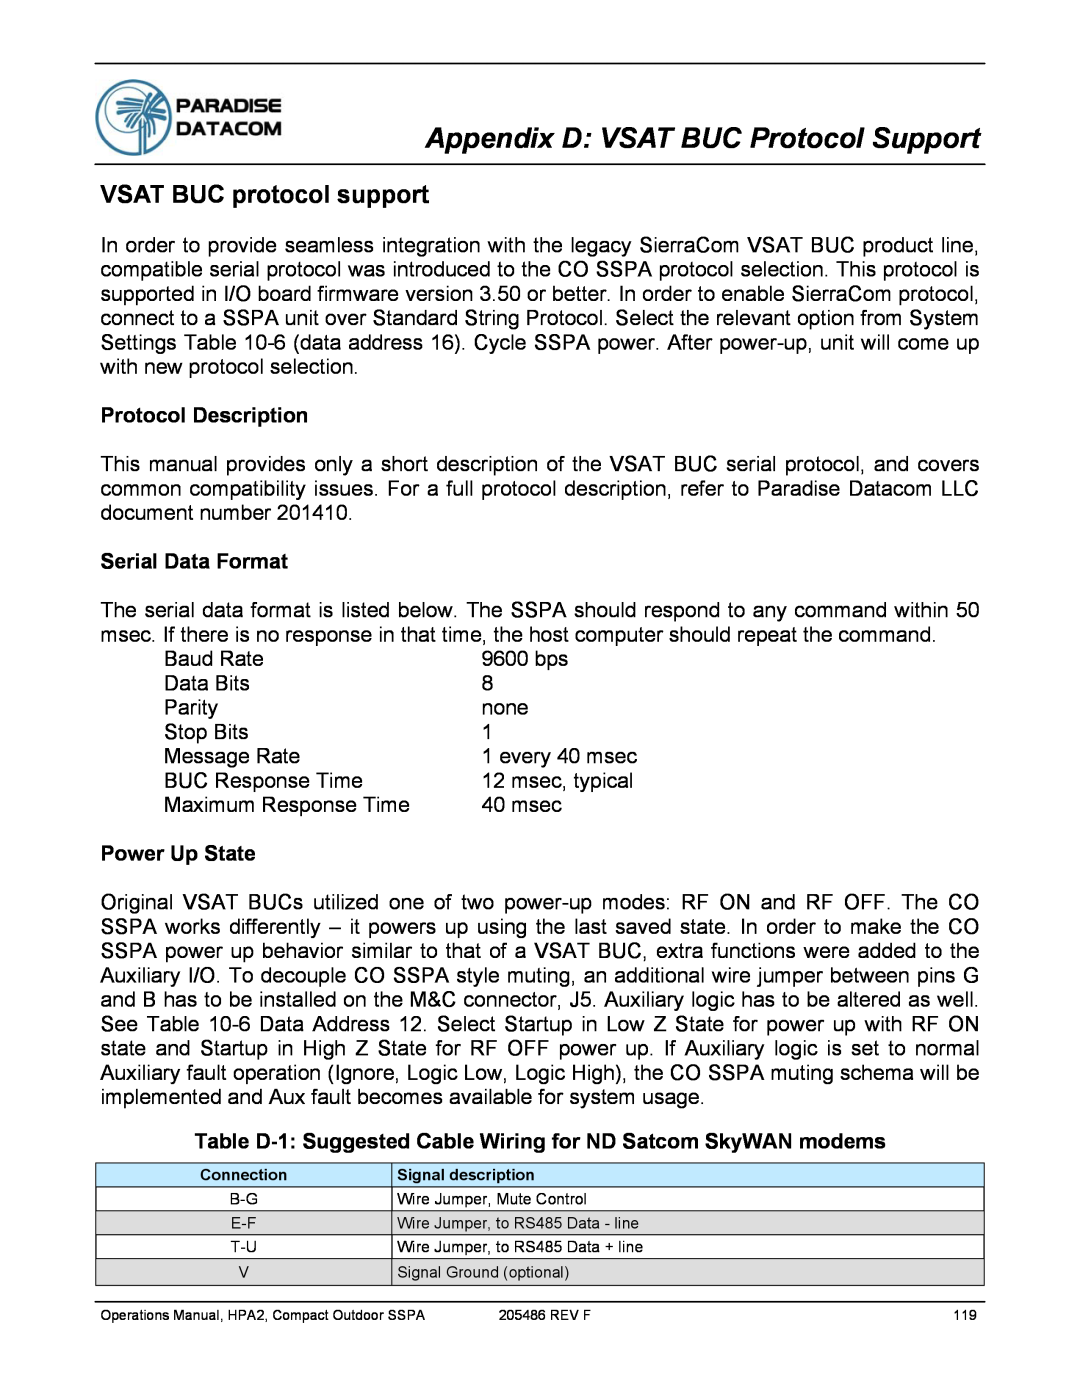 Paradise 205486 REV F manual Appendix D: VSAT BUC Protocol Support, VSAT BUC protocol support, Protocol Description 